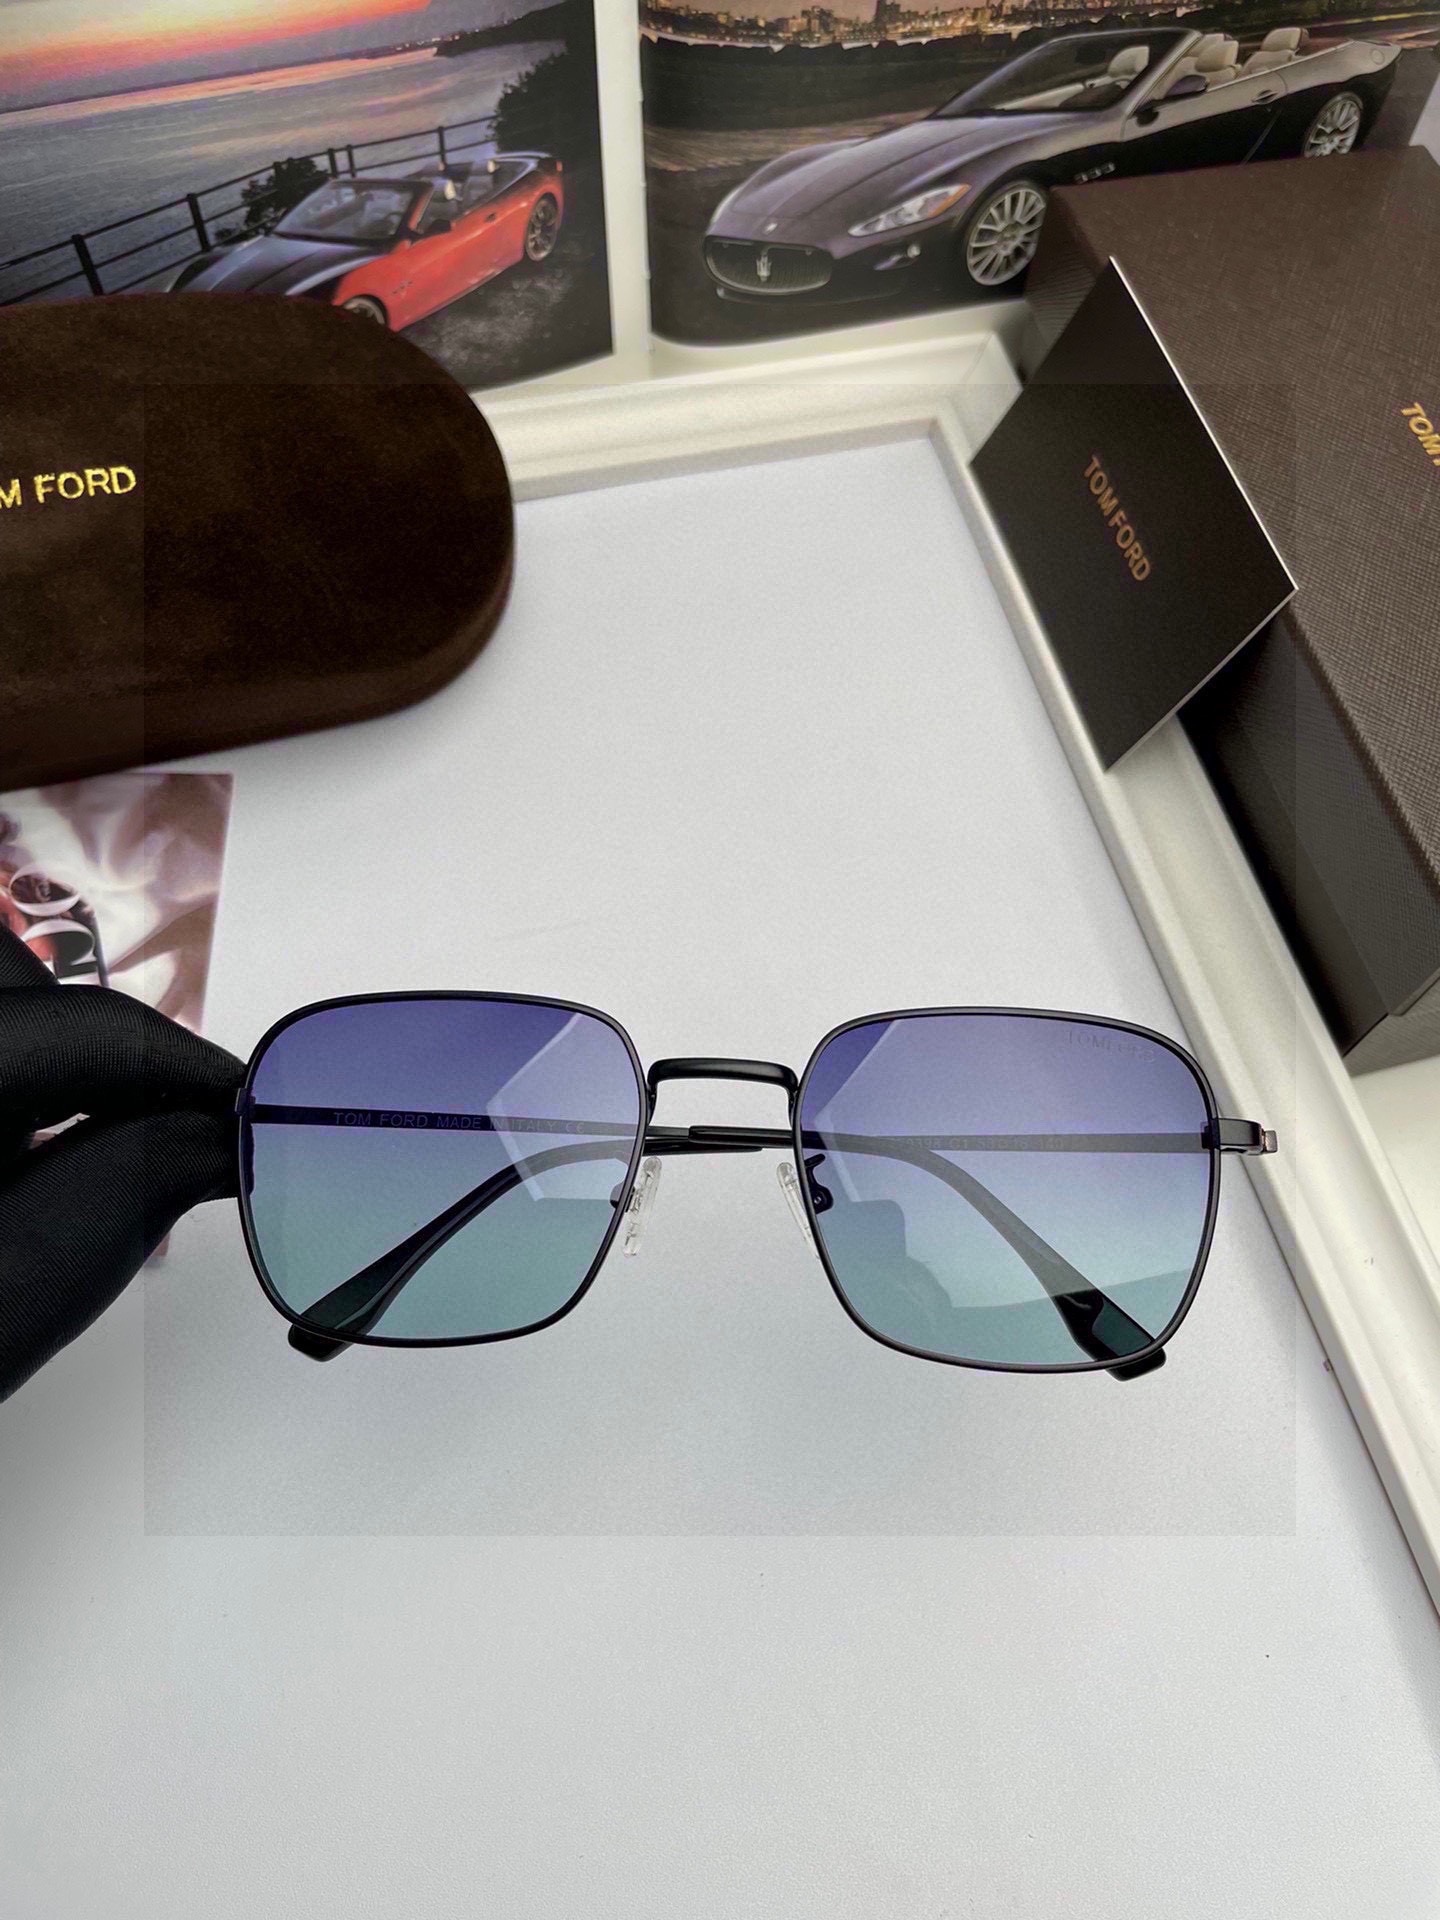 新款品牌TF汤姆福特高品质男士偏光太阳镜️材质进口宝丽来偏光镜片进口不锈钢合金镜框质感超赞男士开车必备品